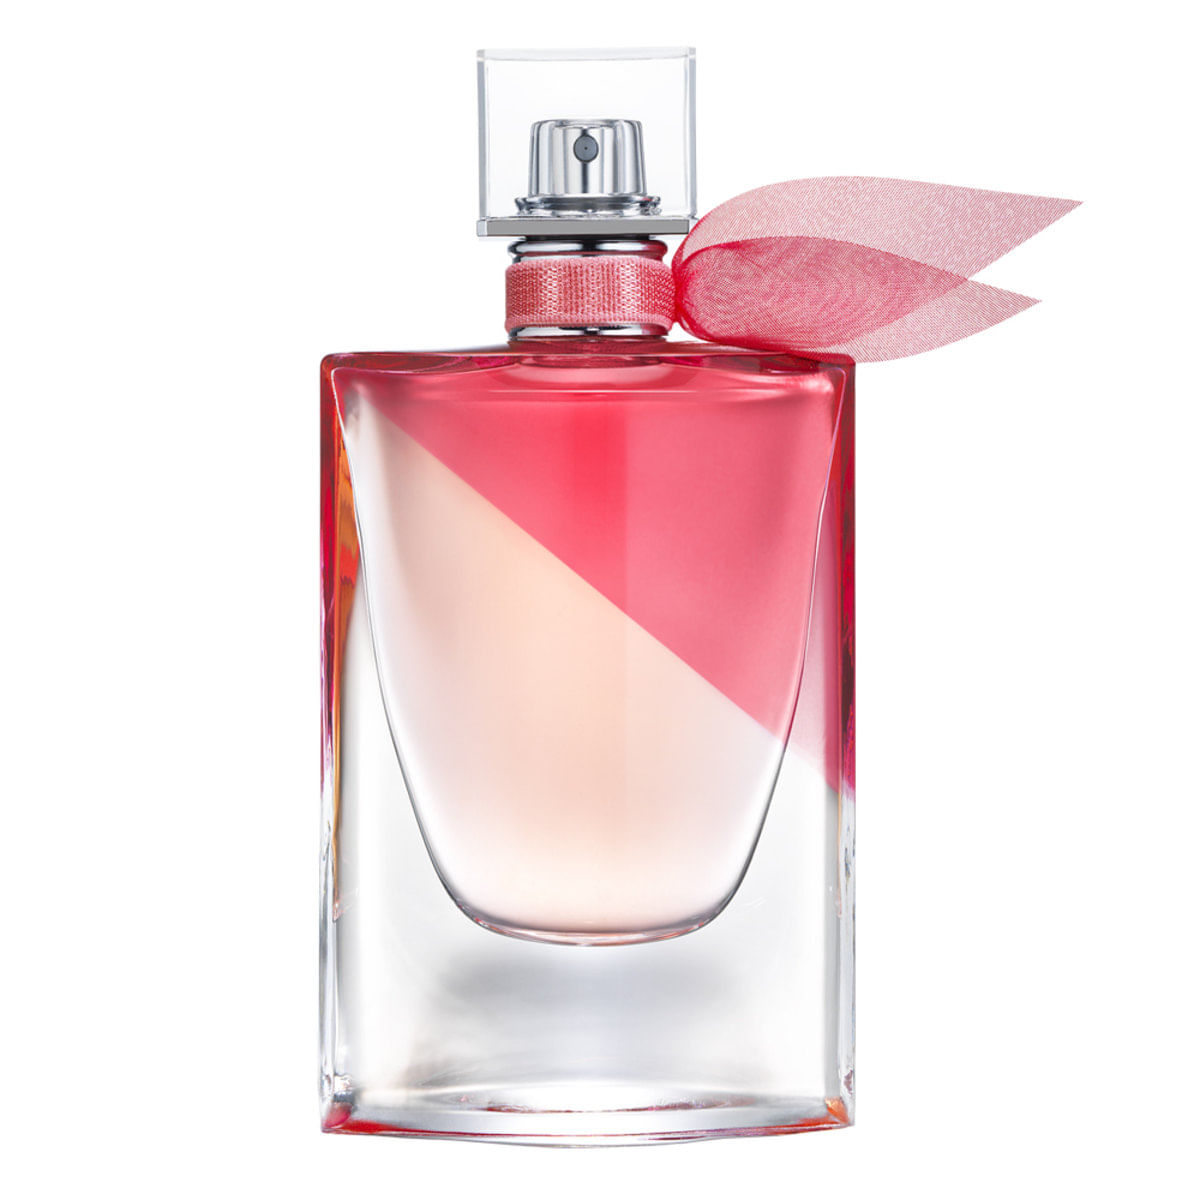 Menor preço em La Vie Este Belle En Rose Lancôme Perfume Feminino - Eau de Toilette 50ml